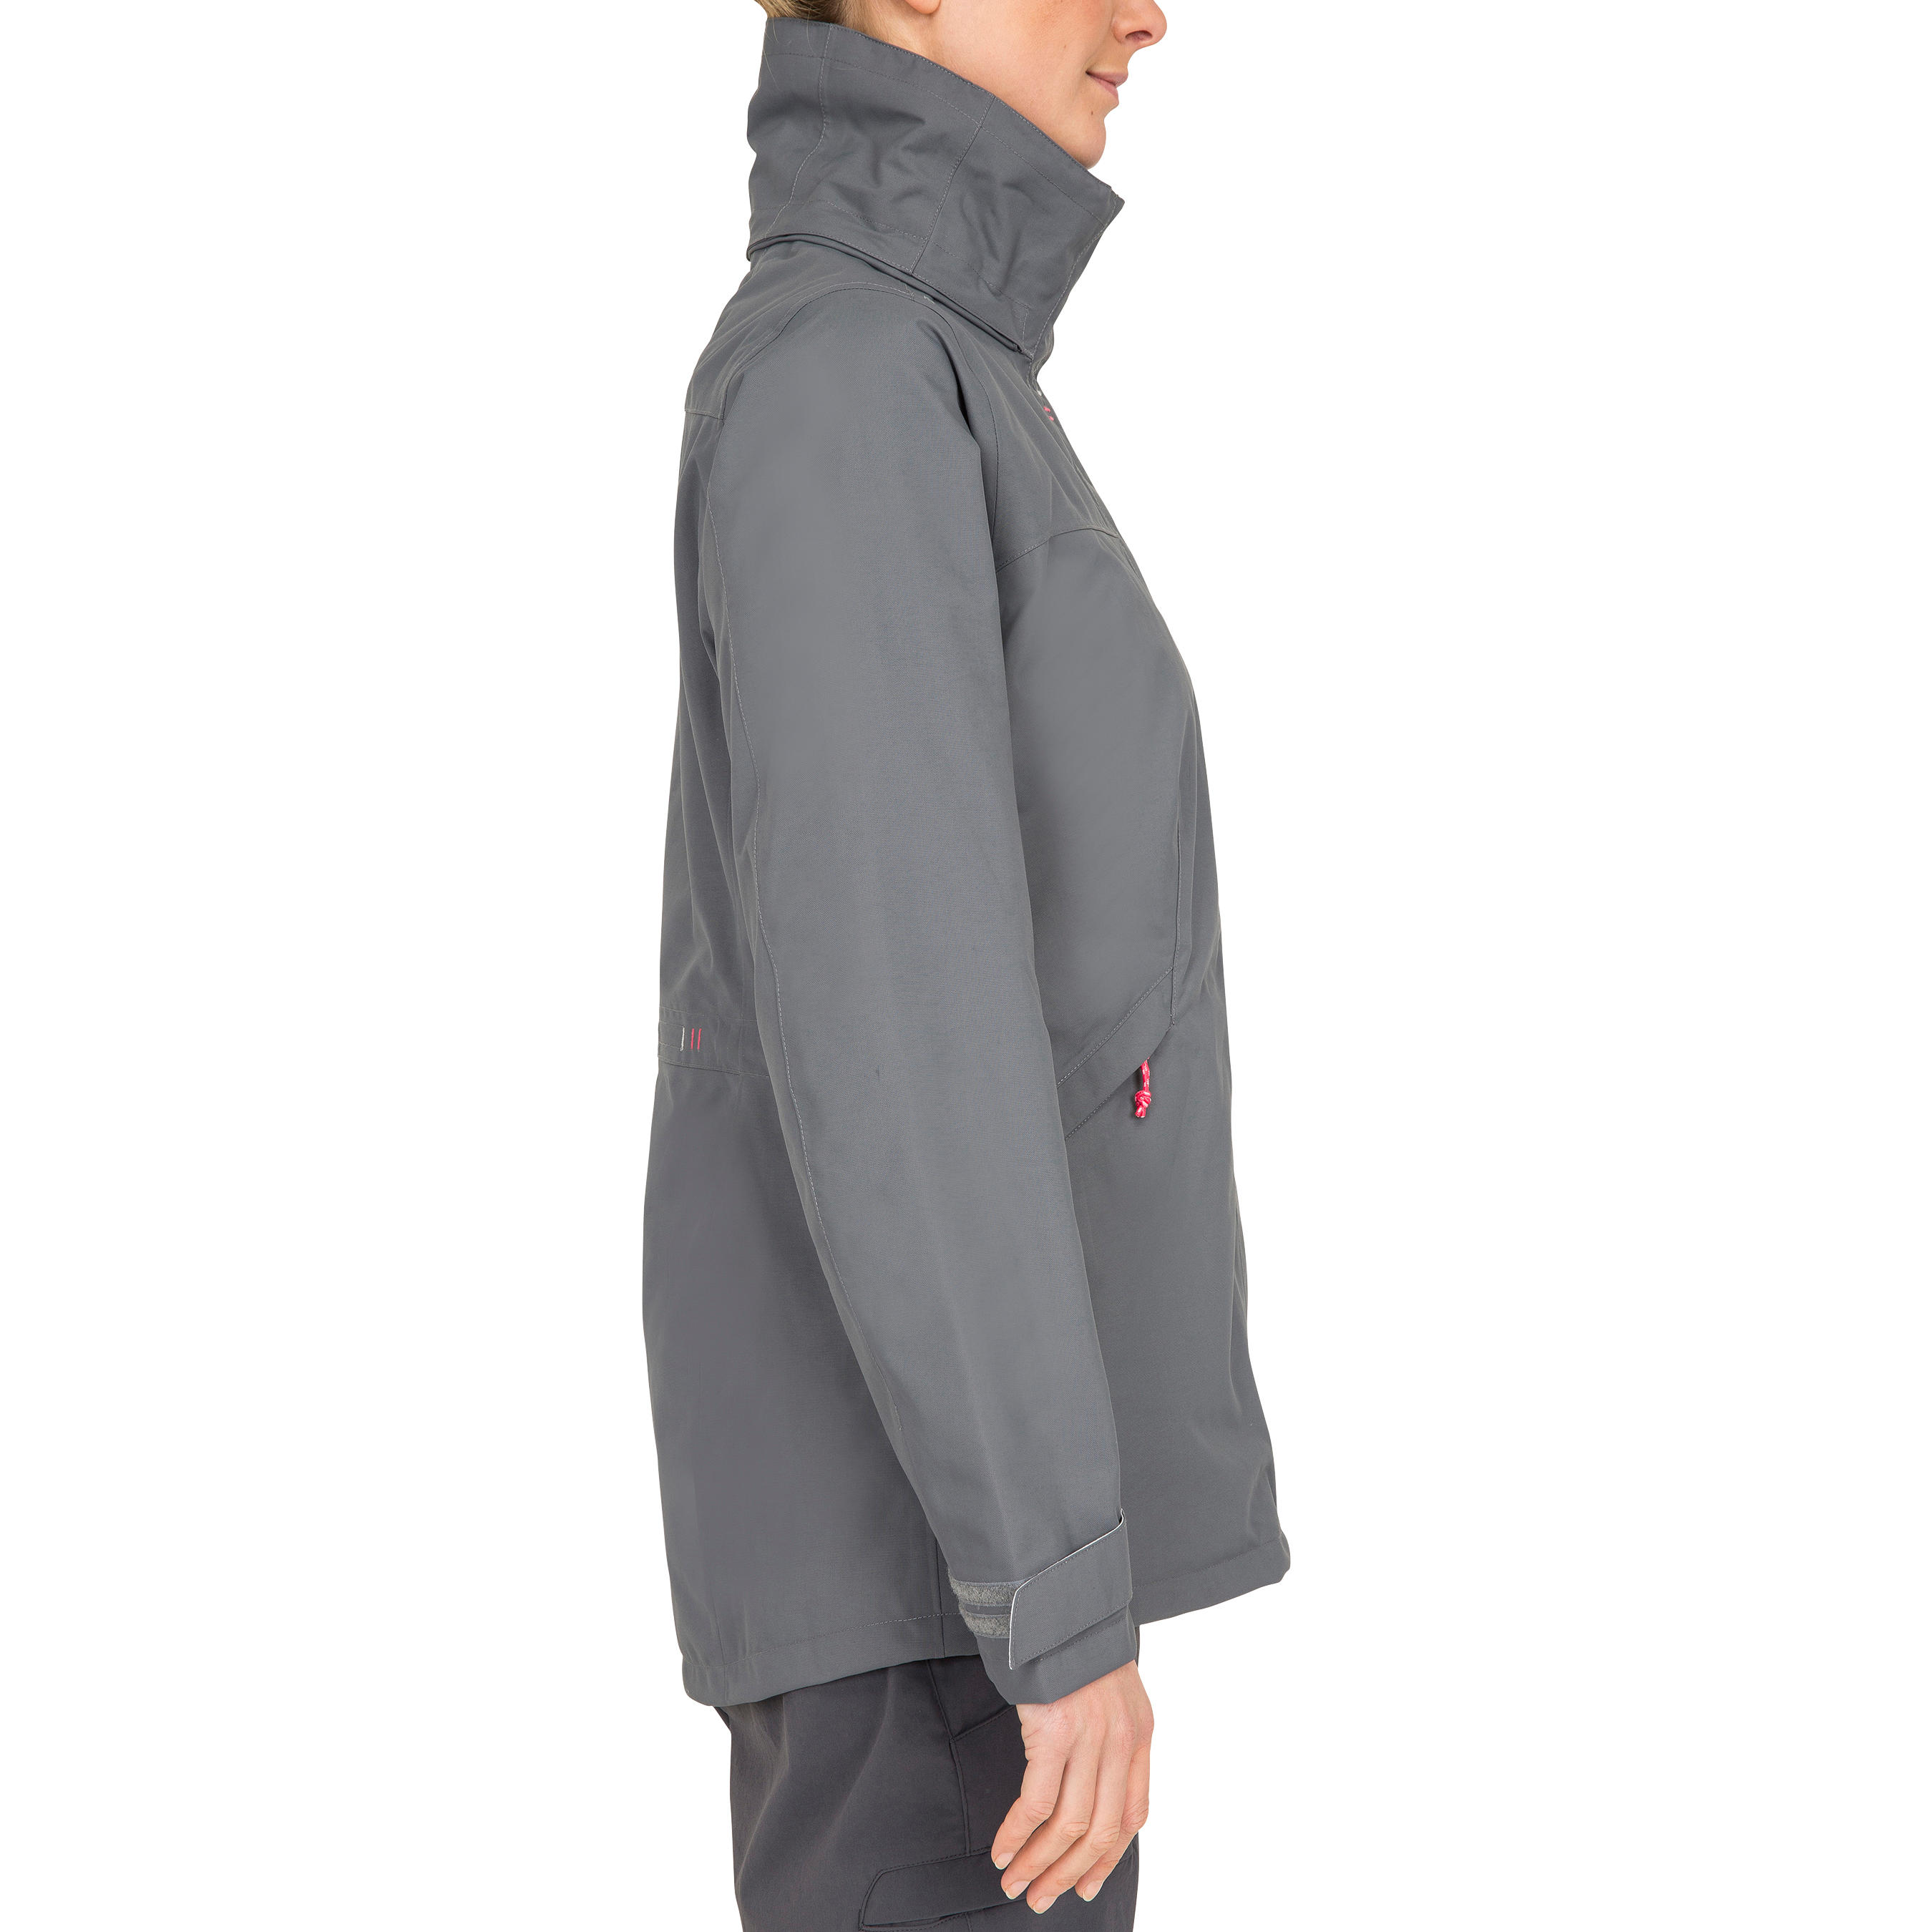 Coastal 100 women's waterproof, windproof, breathable jacket - grey 10/22